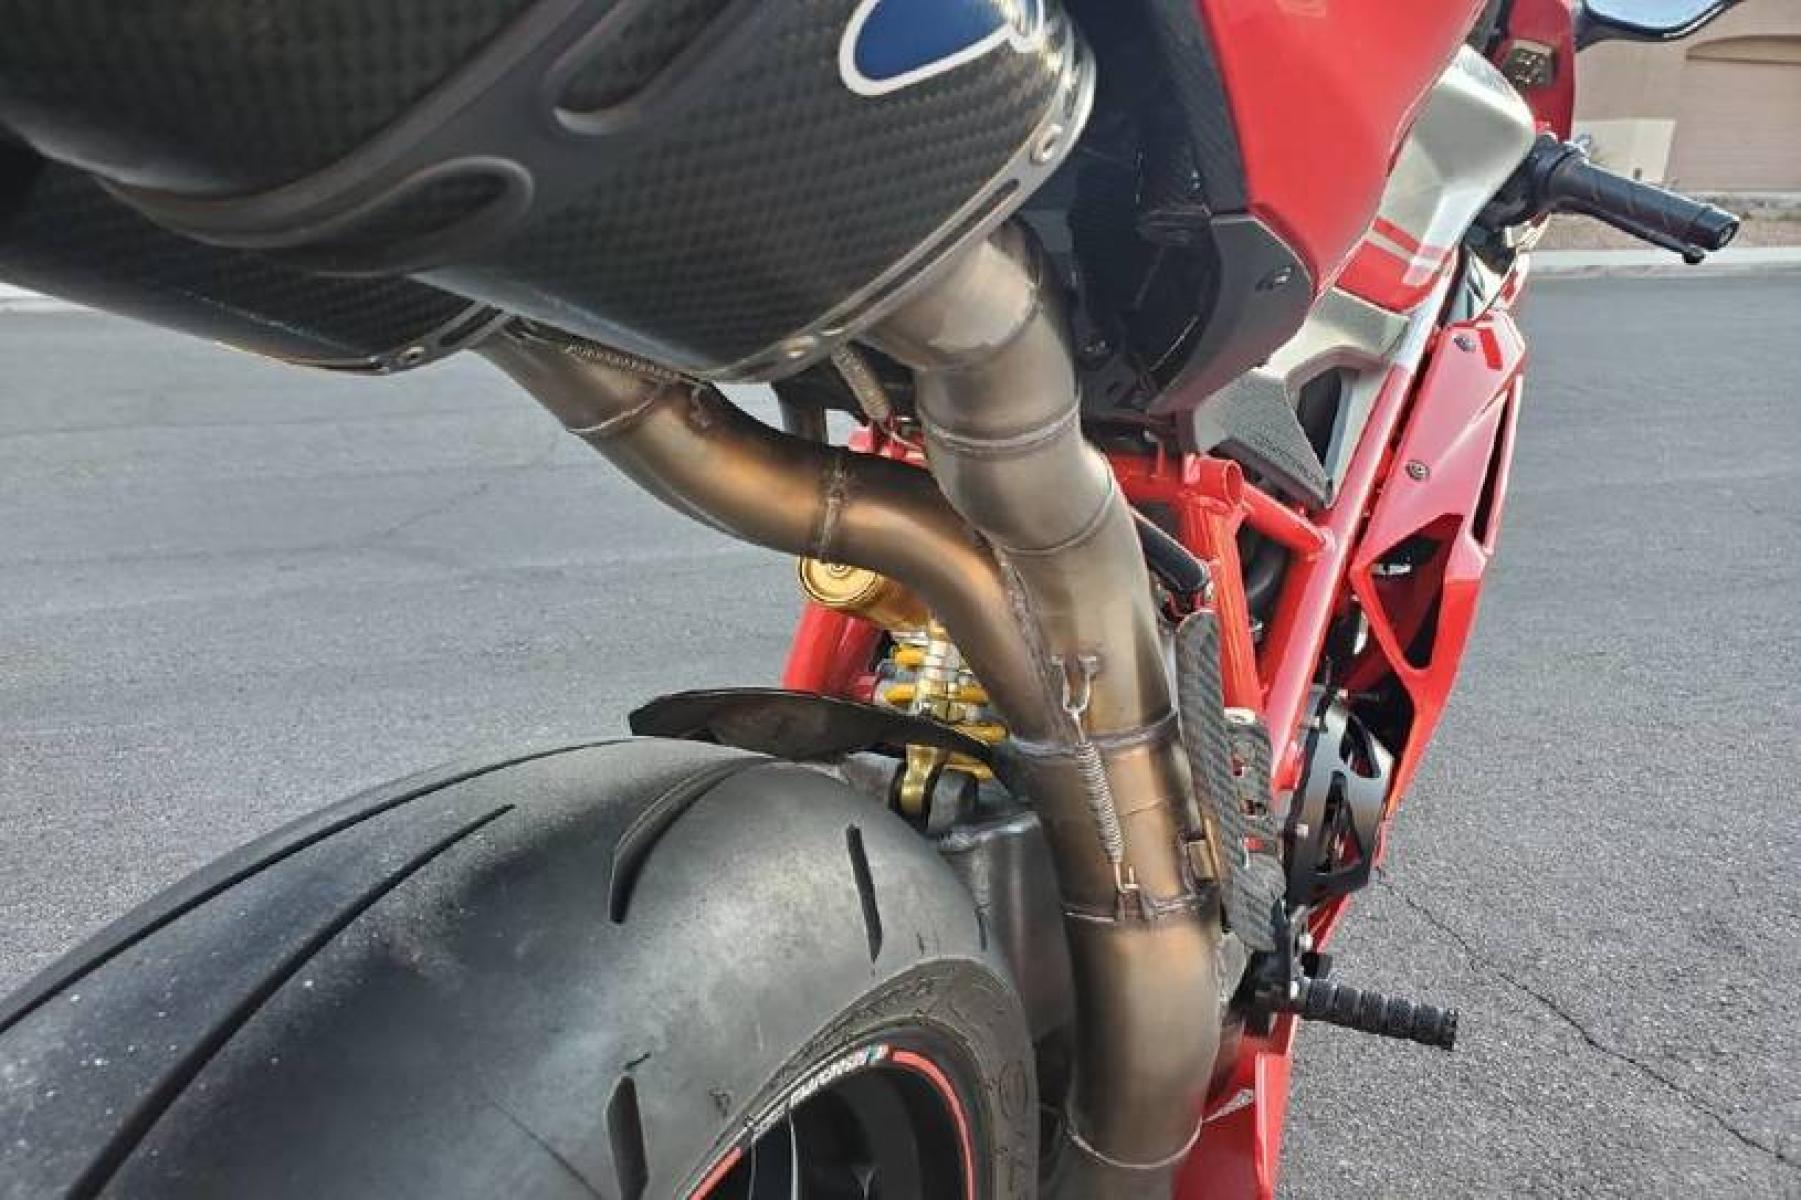 2008 Ducati 1099 S S (ZDM1XBEW18B) with an 1,098 cc L twin engine, Six-Speed Dry Clutch transmission, located at 3160 South Valley View Blvd, Las Vegas, NV, 89146, (888) 750-6845, 36.132458, -115.190247 - b64:VGhlIER1Y2F0aSAxMDk4UyBib2FzdHMgc29tZSBnb3JnZW91cyBib2R5d29yayBhbmQgc2xpY2sgZGVzaWduIGN1ZXMsIGJ1dCBpdHMgcmVhbCBtYXN0ZXJwaWVjZSBsaWVzIGJlbmVhdGggdGhvc2UgcHJldHR5IHBsYXN0aWMgcGFuZWxzLiBVbmRlcm5lYXRoIGlzIGEgdHVidWxhciBzdGVlbCB0cmVsbGlzIGZyYW1lIG9wdGltaXplZCBmb3Igc3RpZmZuZXNzLCBhbmQgYW4gTC10d2luIGVu - Photo #6